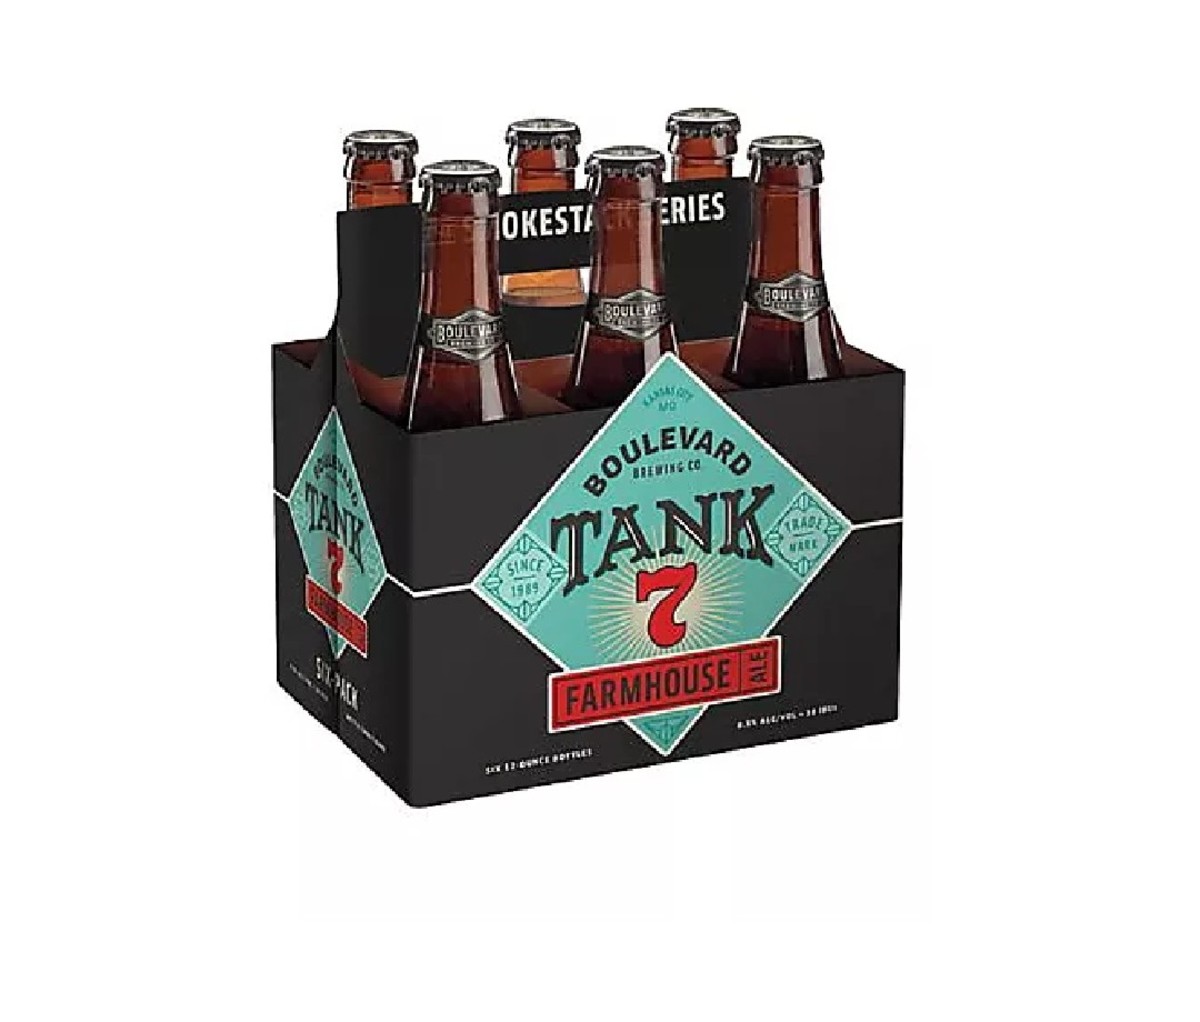 6-Pack of Boulevard Tank 7 bottled beer